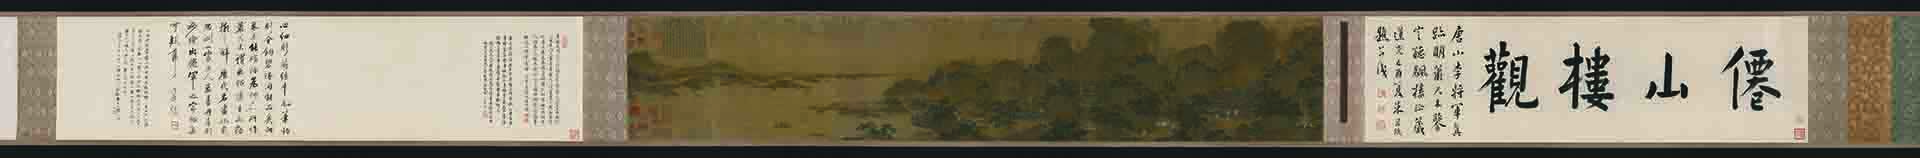 唐 李昭道（传） 仙山楼观图卷 绢本25.5 x 158CM